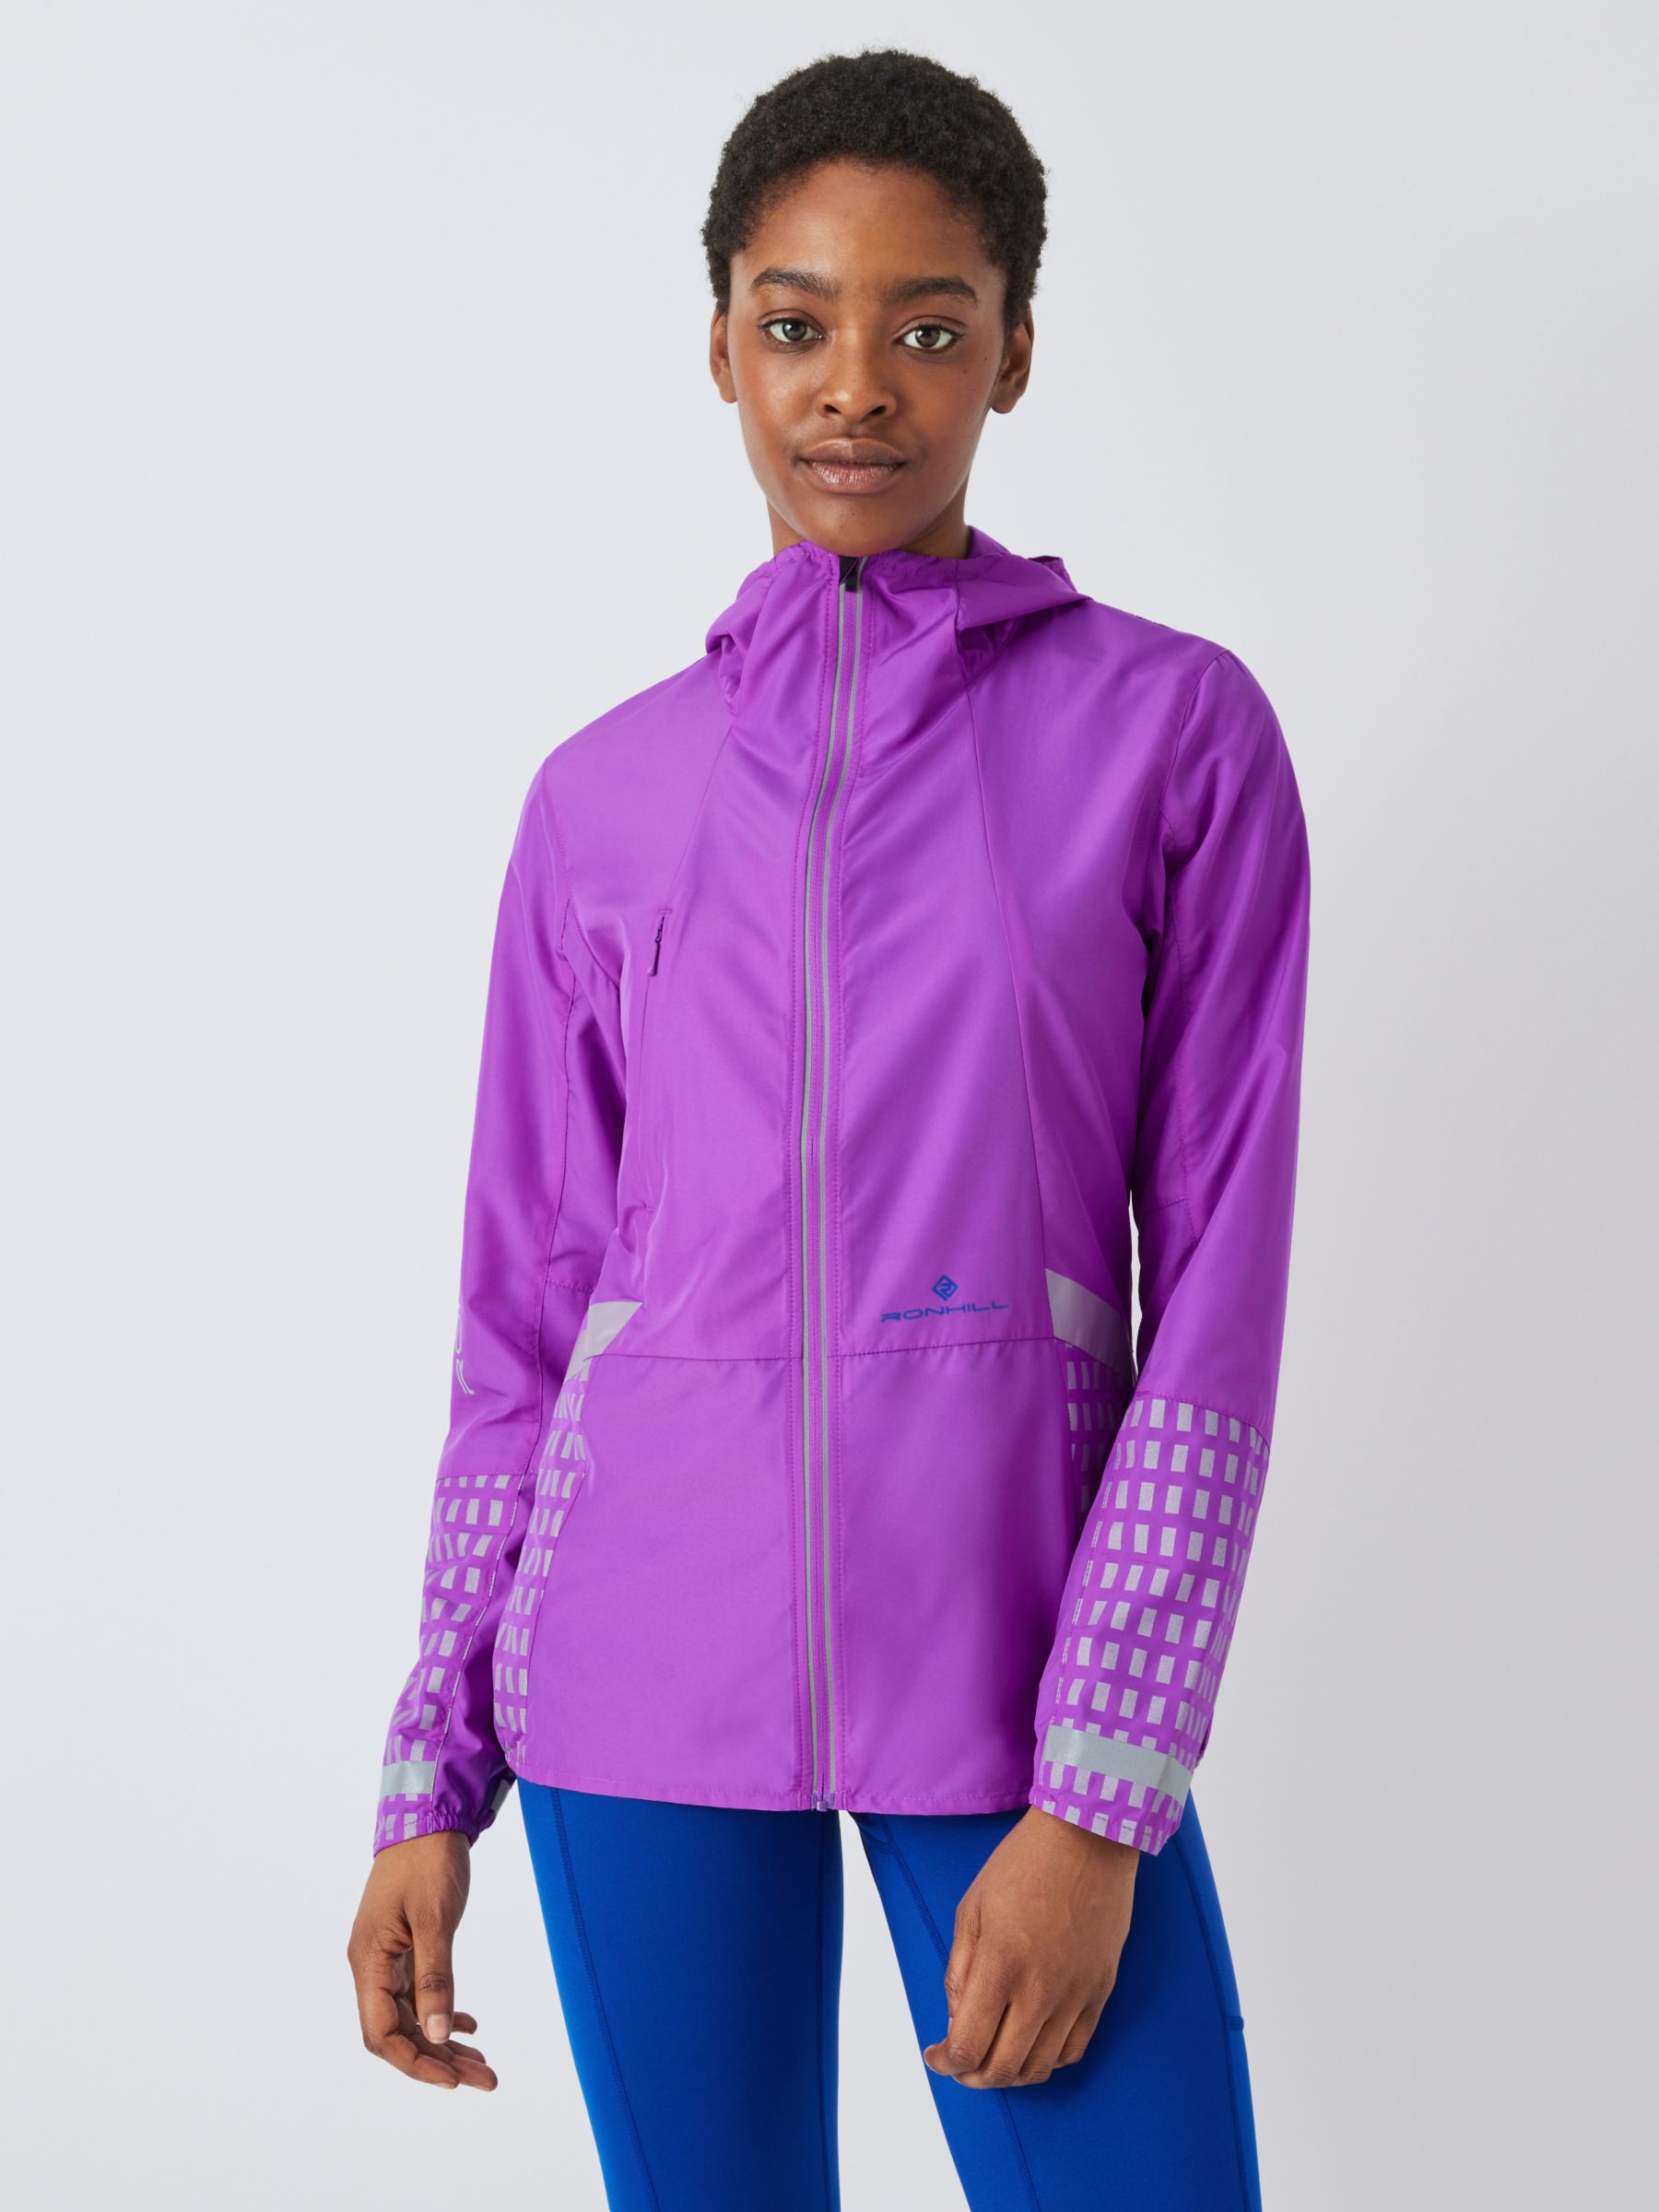 Buy Ronhill Womens Core Running Jacket Moss/Bubblegum